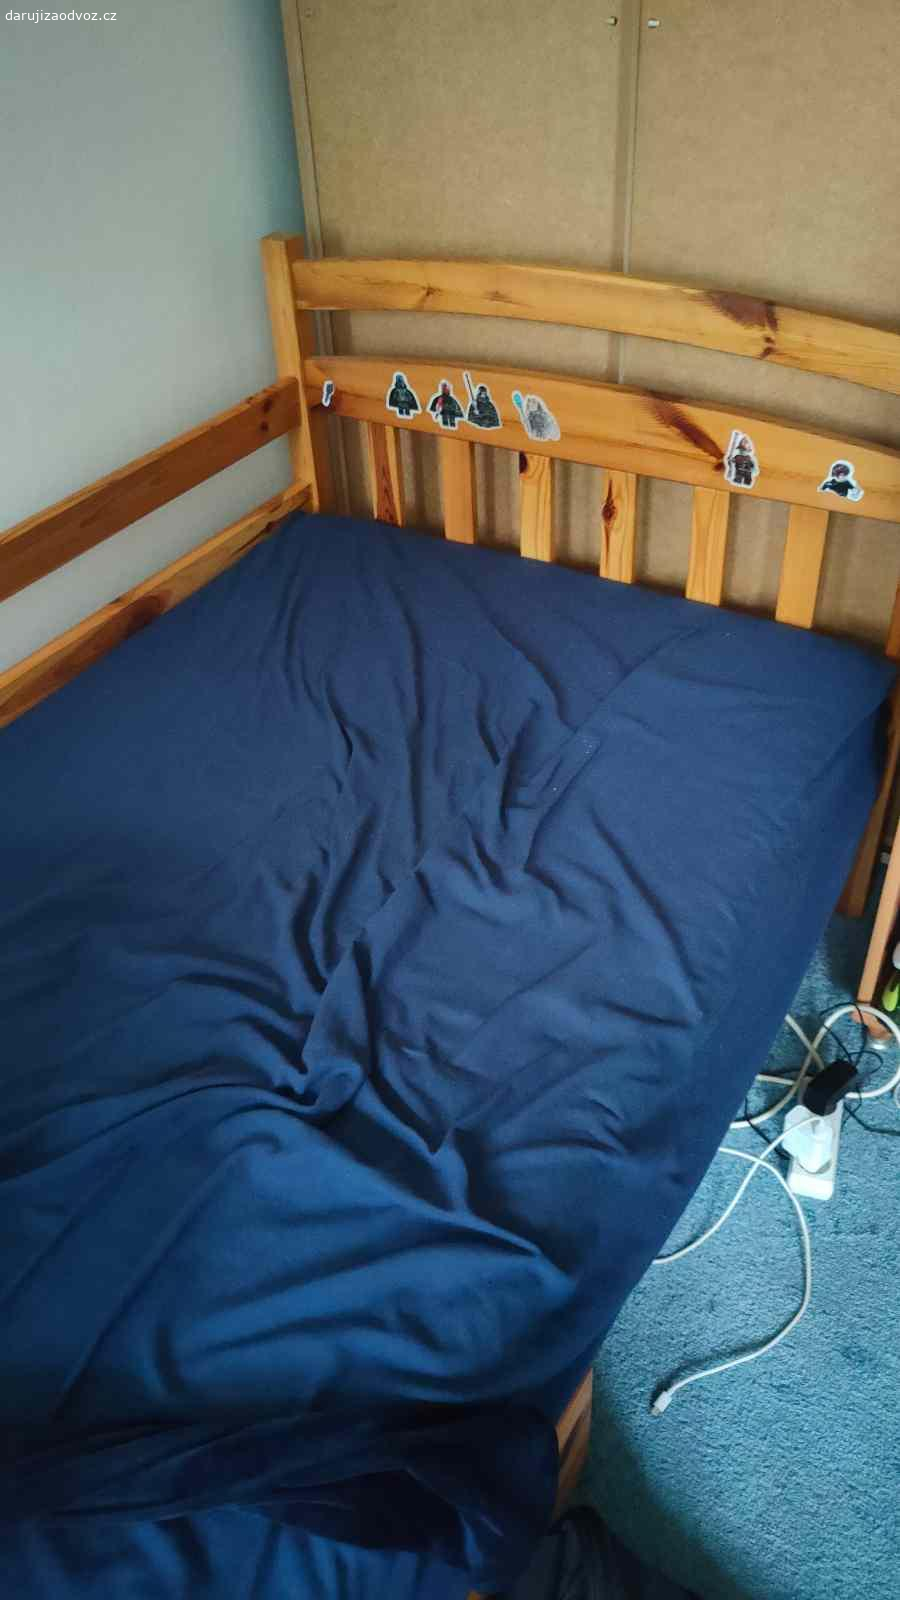 Dvě postele - původně patrová postel. Nabízím za odvoz dvě dřevěné postele (zřejmě borovice), které původně sloužily jako patrová postel a asi se zase dají smontovat dohromady. Pod postelí jsou dva šuplíky na kolečkách, kam si děti dávaly hračky. Postele jsou polepené samolepkami lego panáčků, ale to se určitě dá odstranit. Jinak plně funkční a k dispozici okamžitě. Dávám bez matrací.